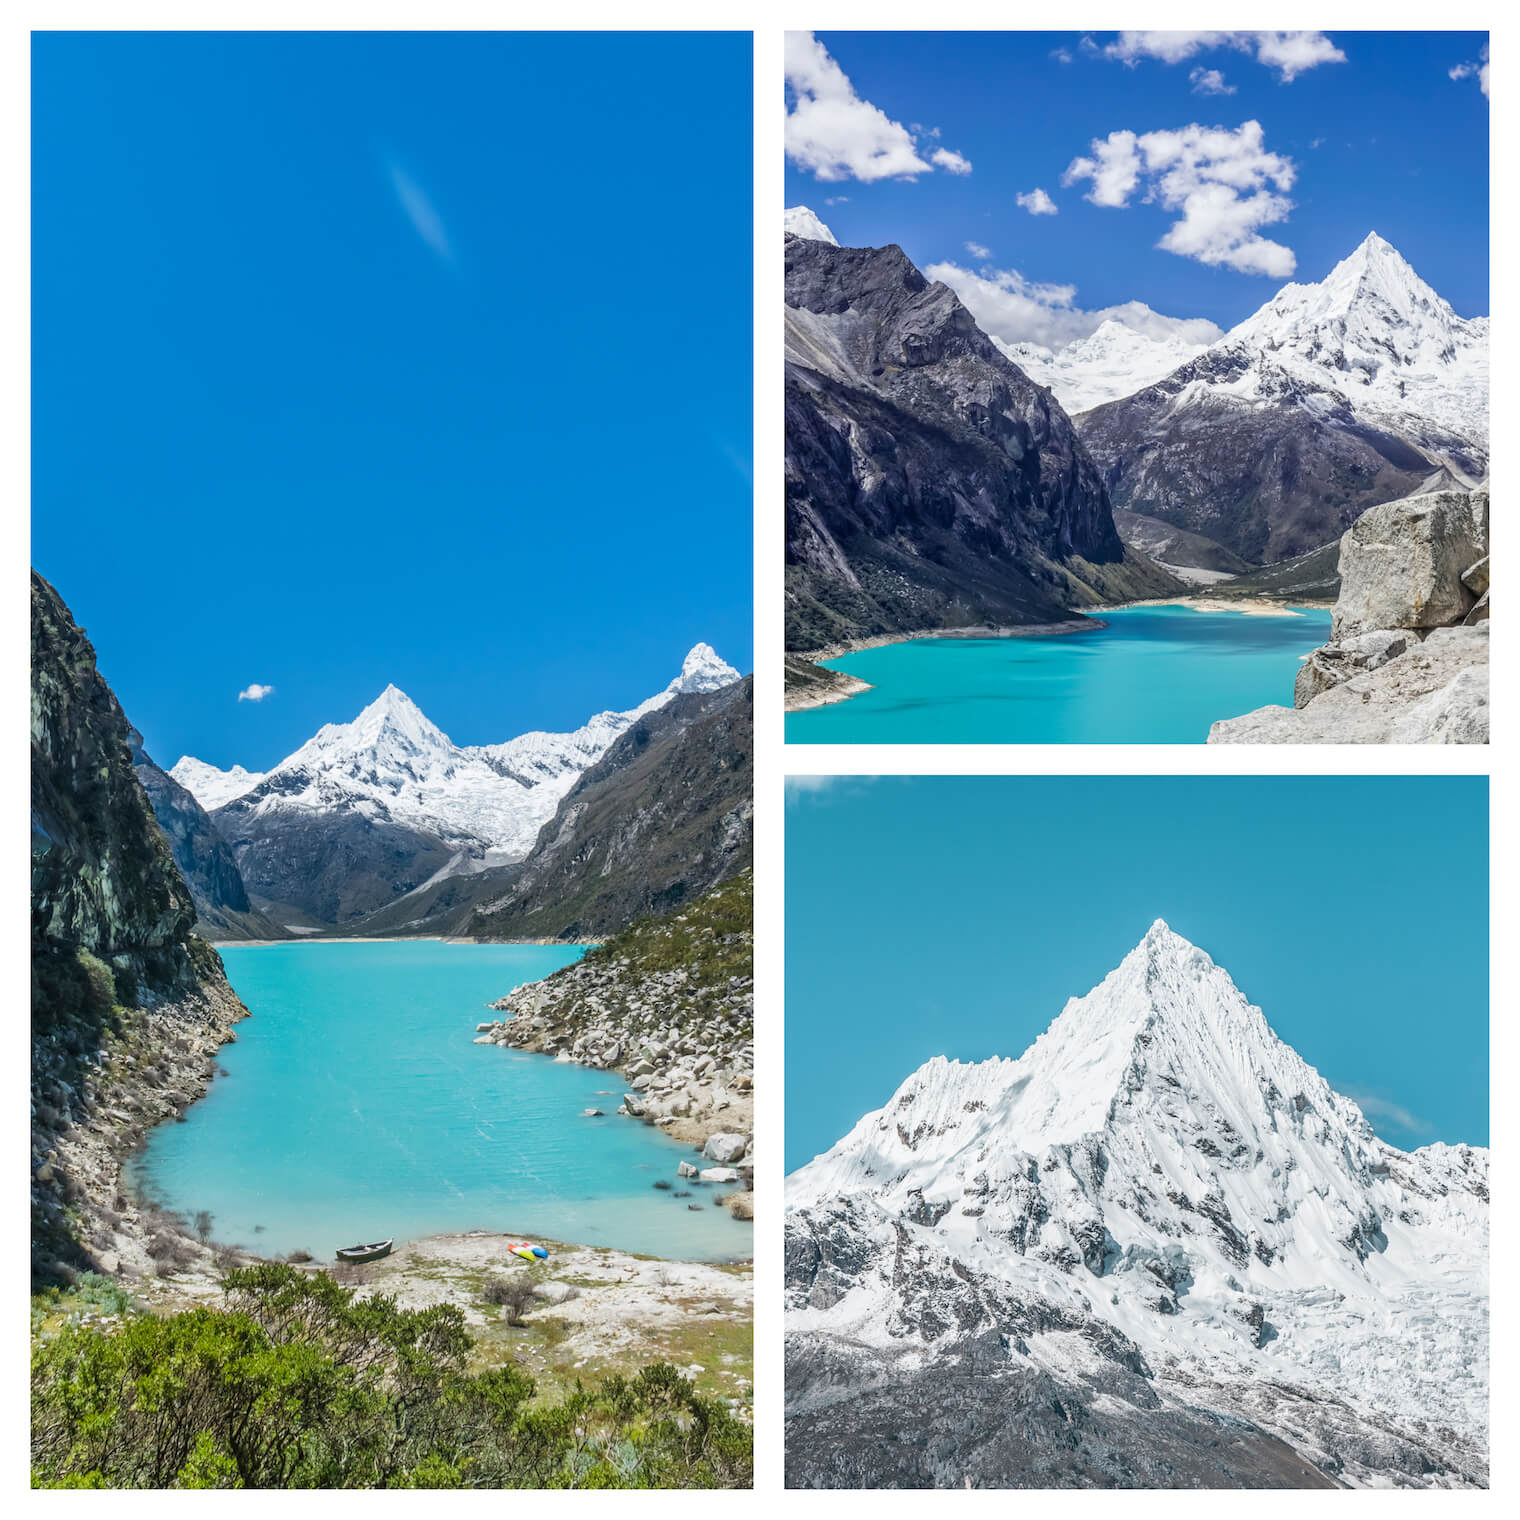 3 fotos: Em destaque na esquerda: foto de um lago bastante azul com uma montanha nevada ao fundo. Superior direita: outra visão do lago e montanha um pouco mais de cima. Inferior direita: um destaque no pico nevado.